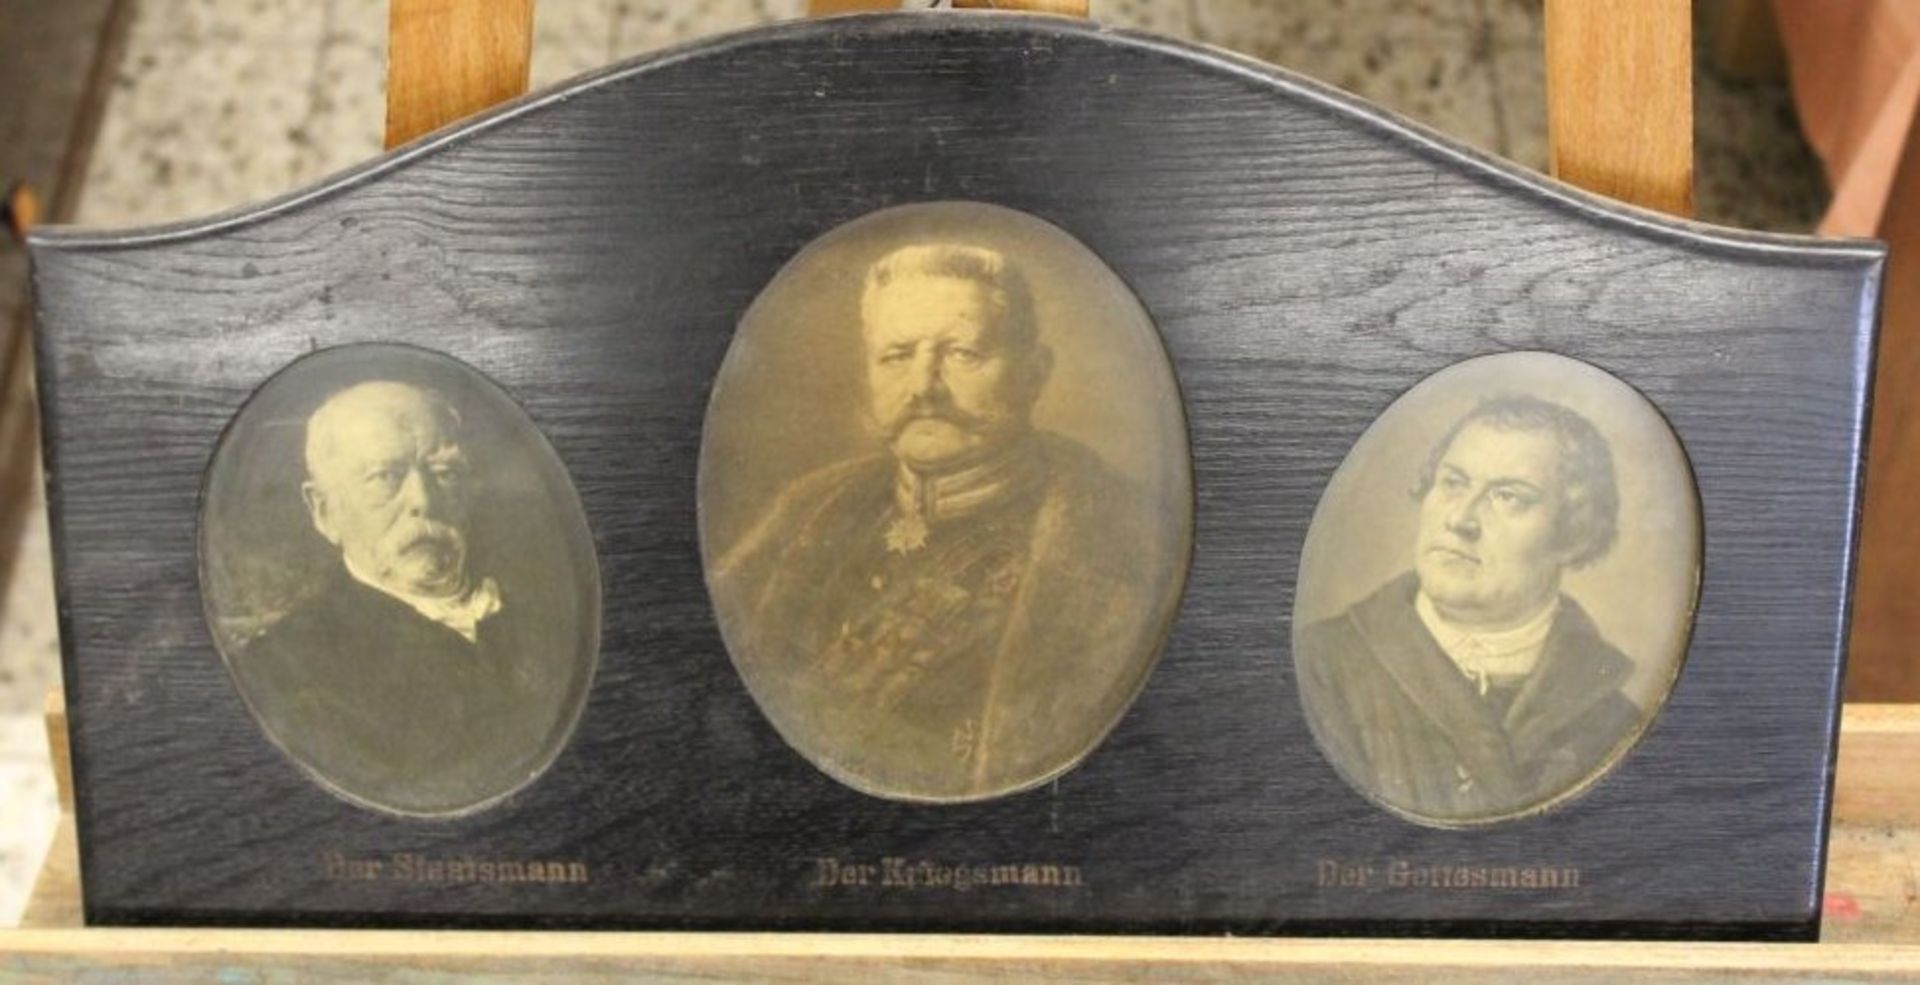 3x Portraitdrucke in einem Rahmen, um 1910, Der Staatsmann, Der Kriegsmann und Der Gottesmann,